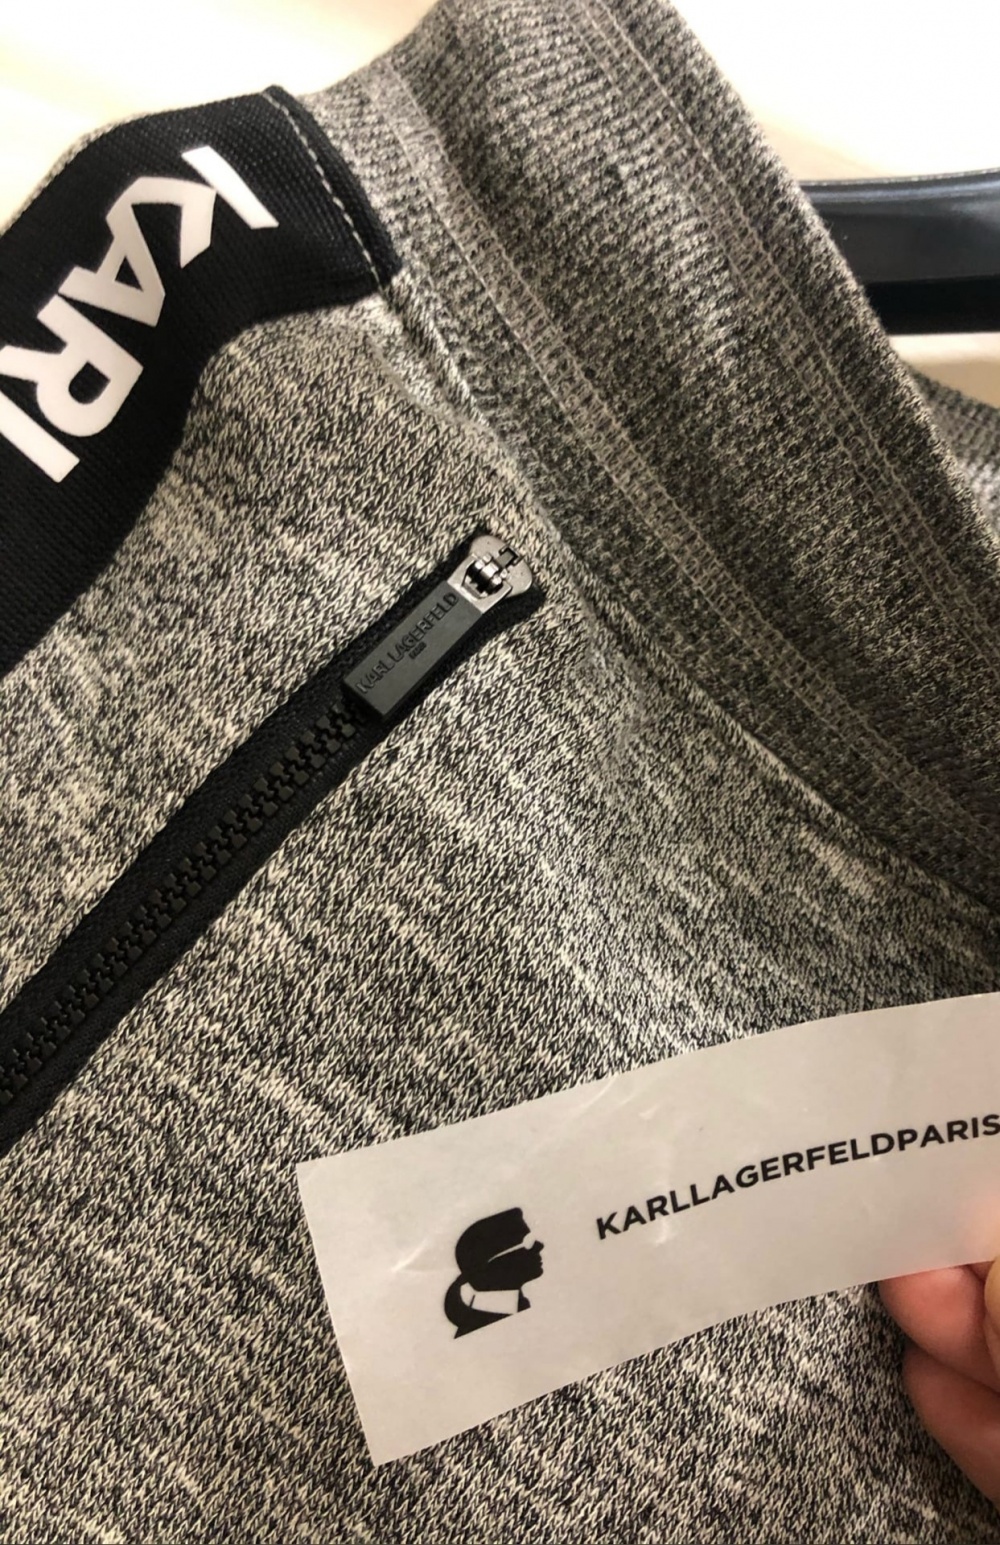 Спортивные брюки с логотипом KARL LAGERFELD. Размер M-L.